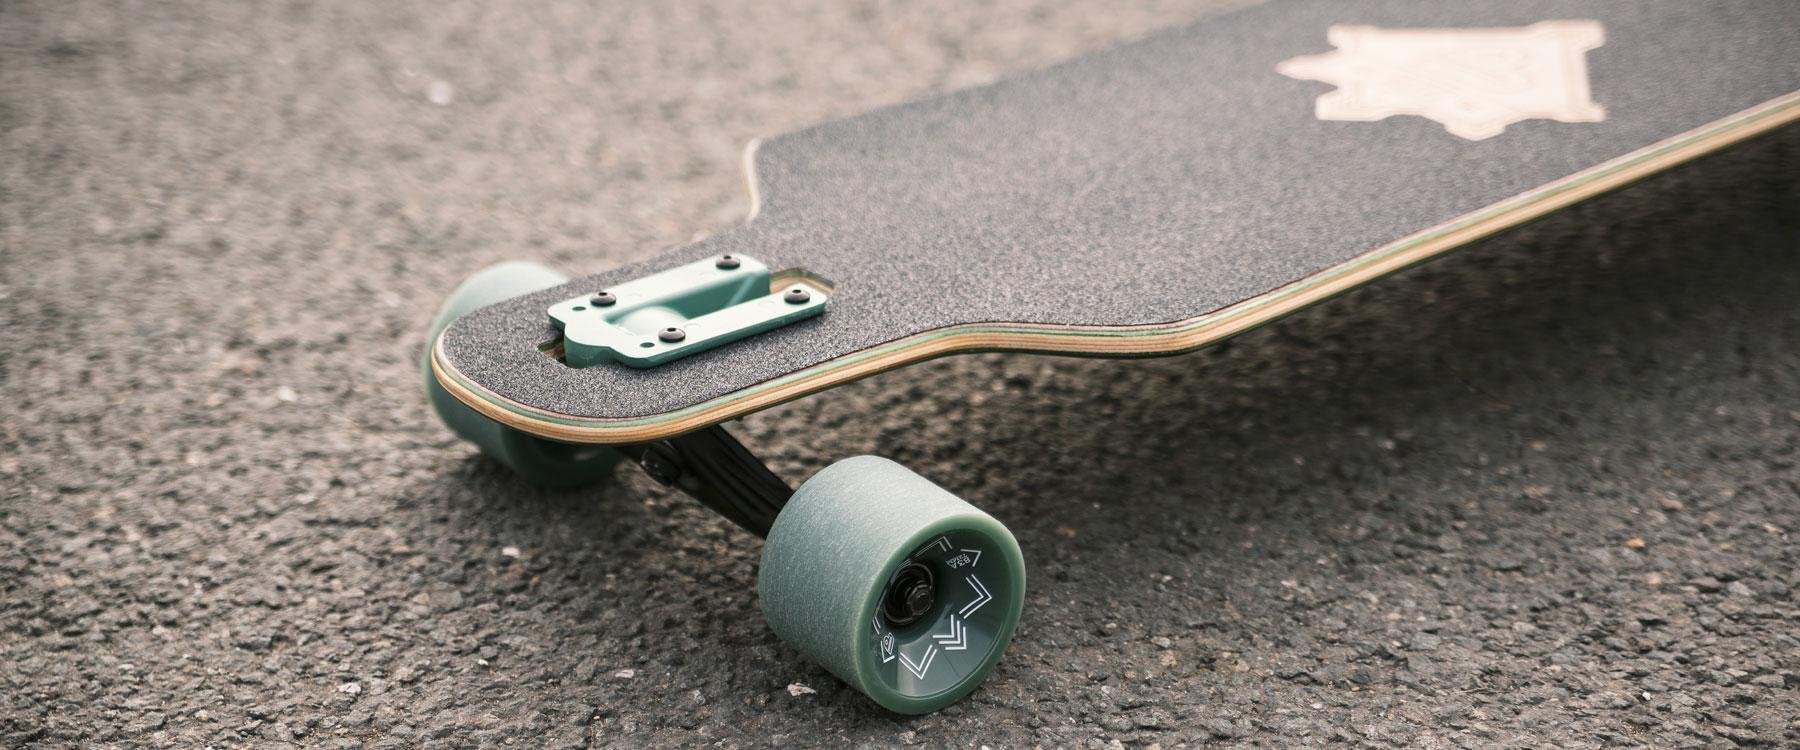 Millimeter tobben was Check de soorten skateboards en wat de verschillen zijn